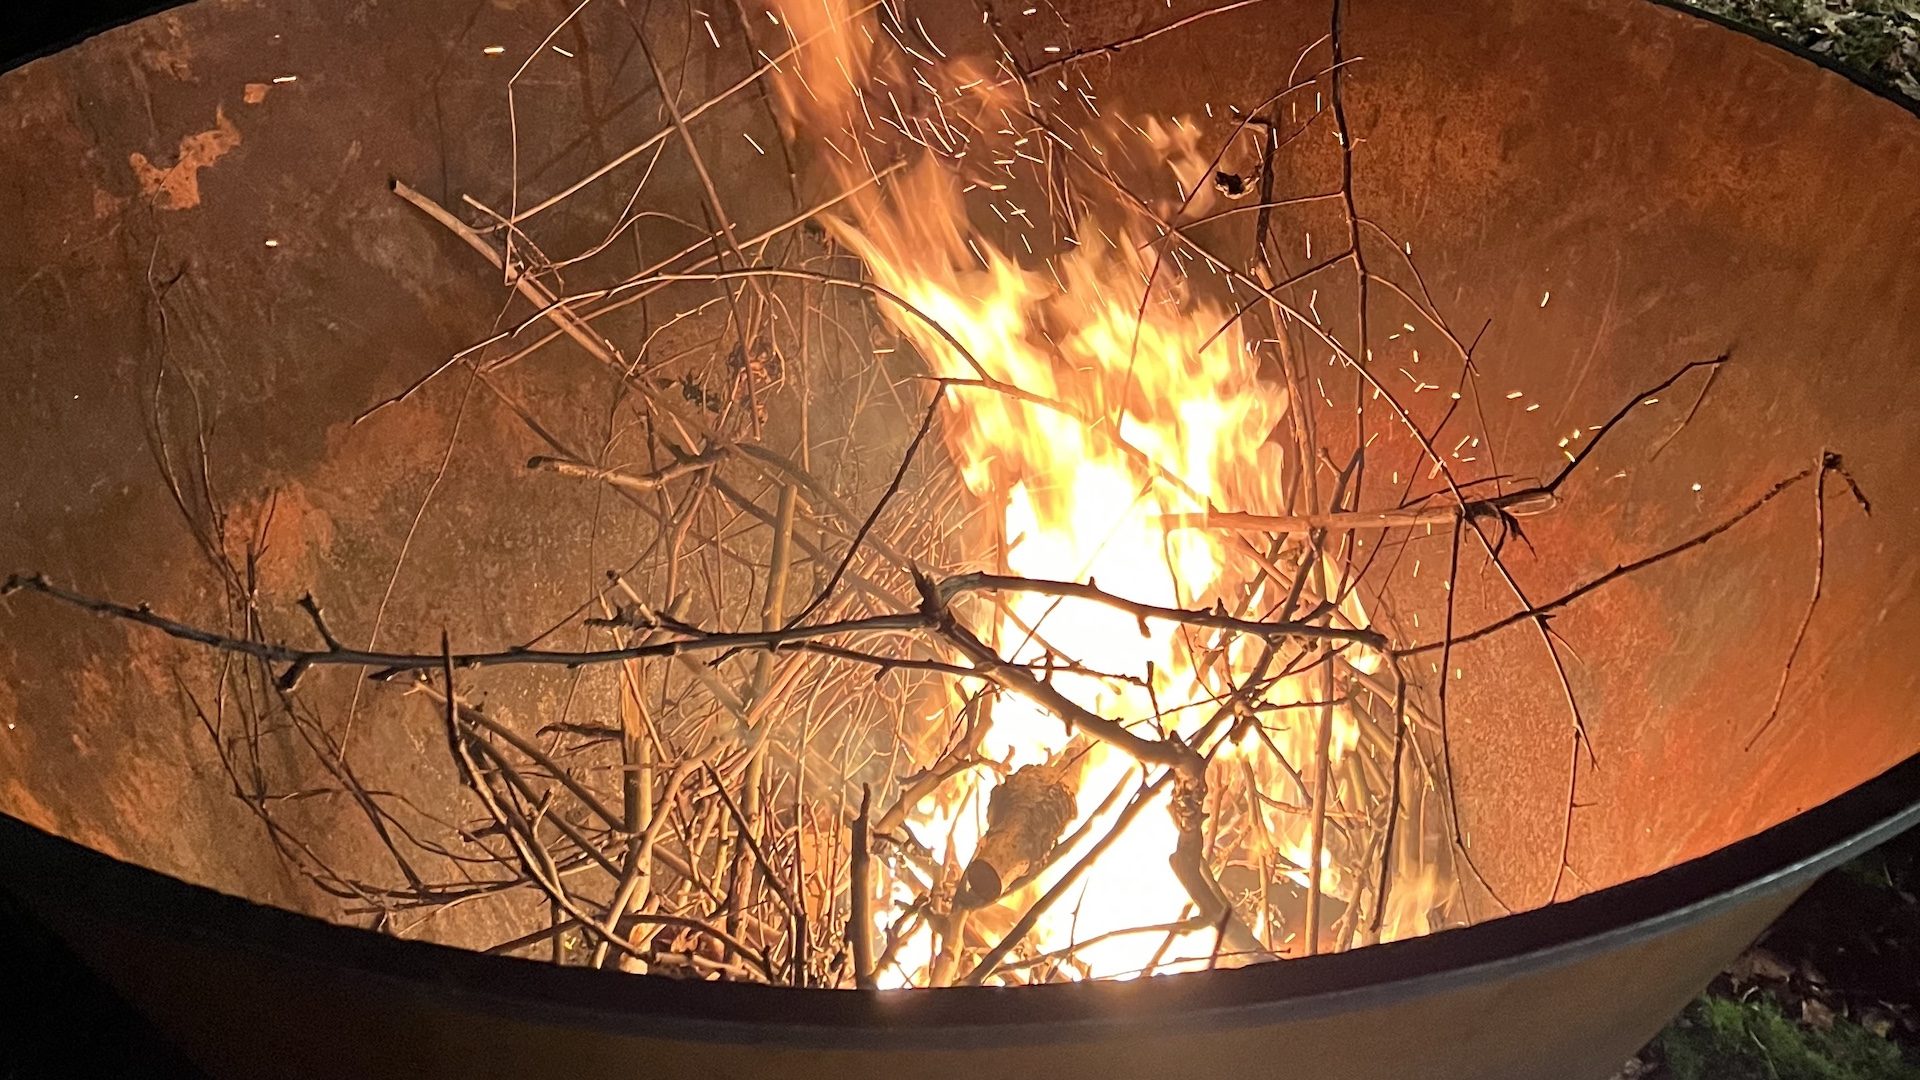 Sweden in springtime bonfires